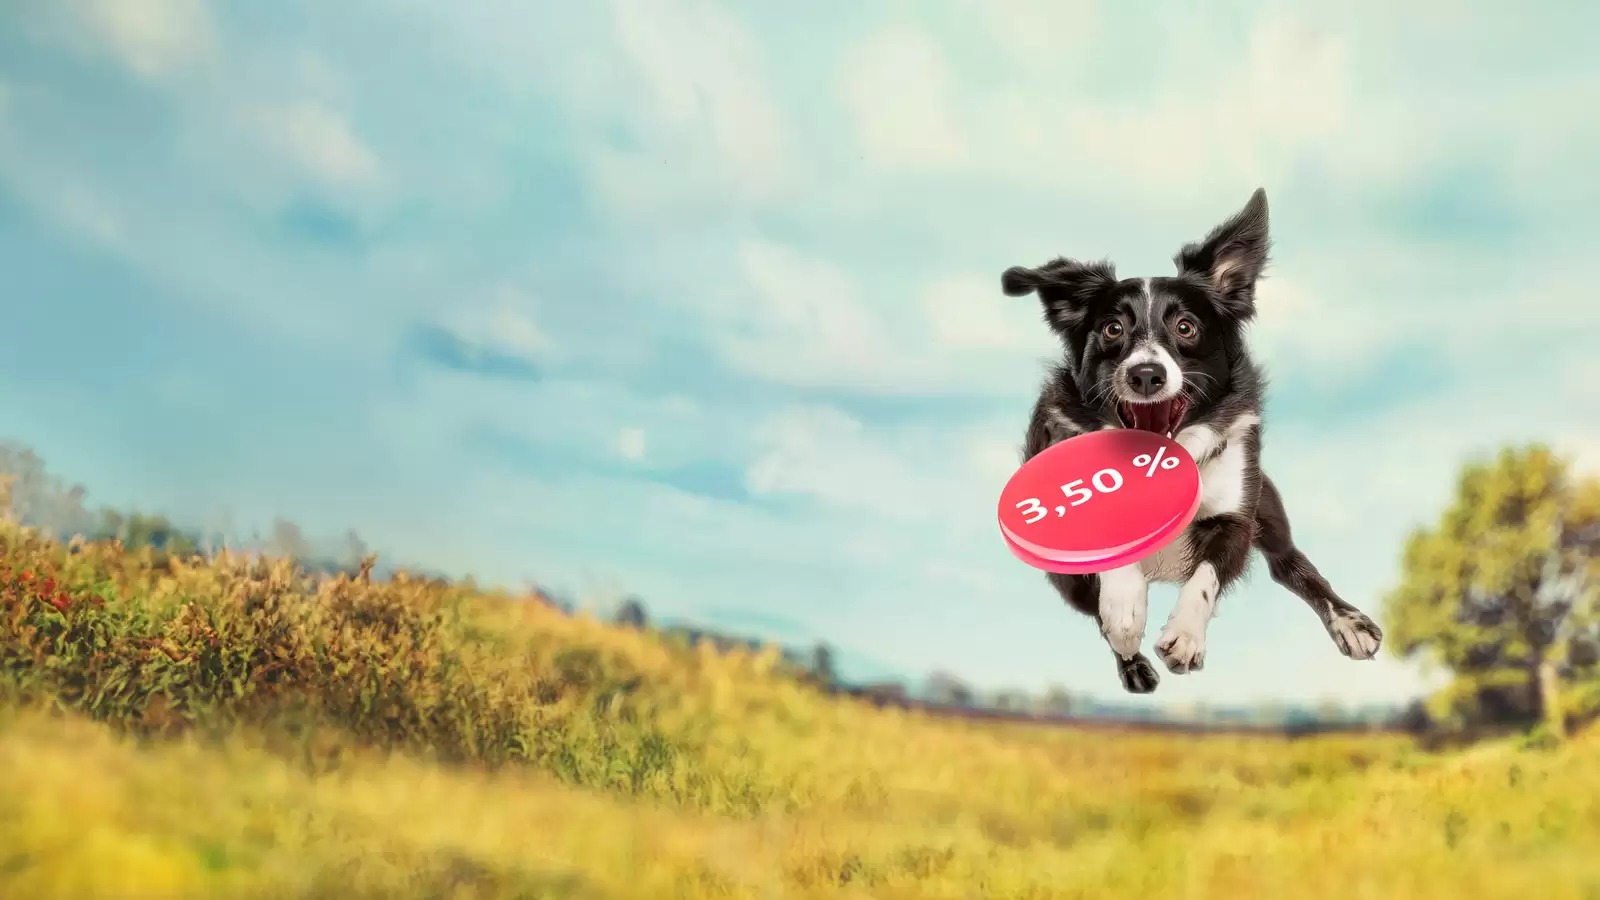 Hund springt auf Wiese in die Luft und hält rote Frisbee mit der Zahl 3,50 Prozent im Maul